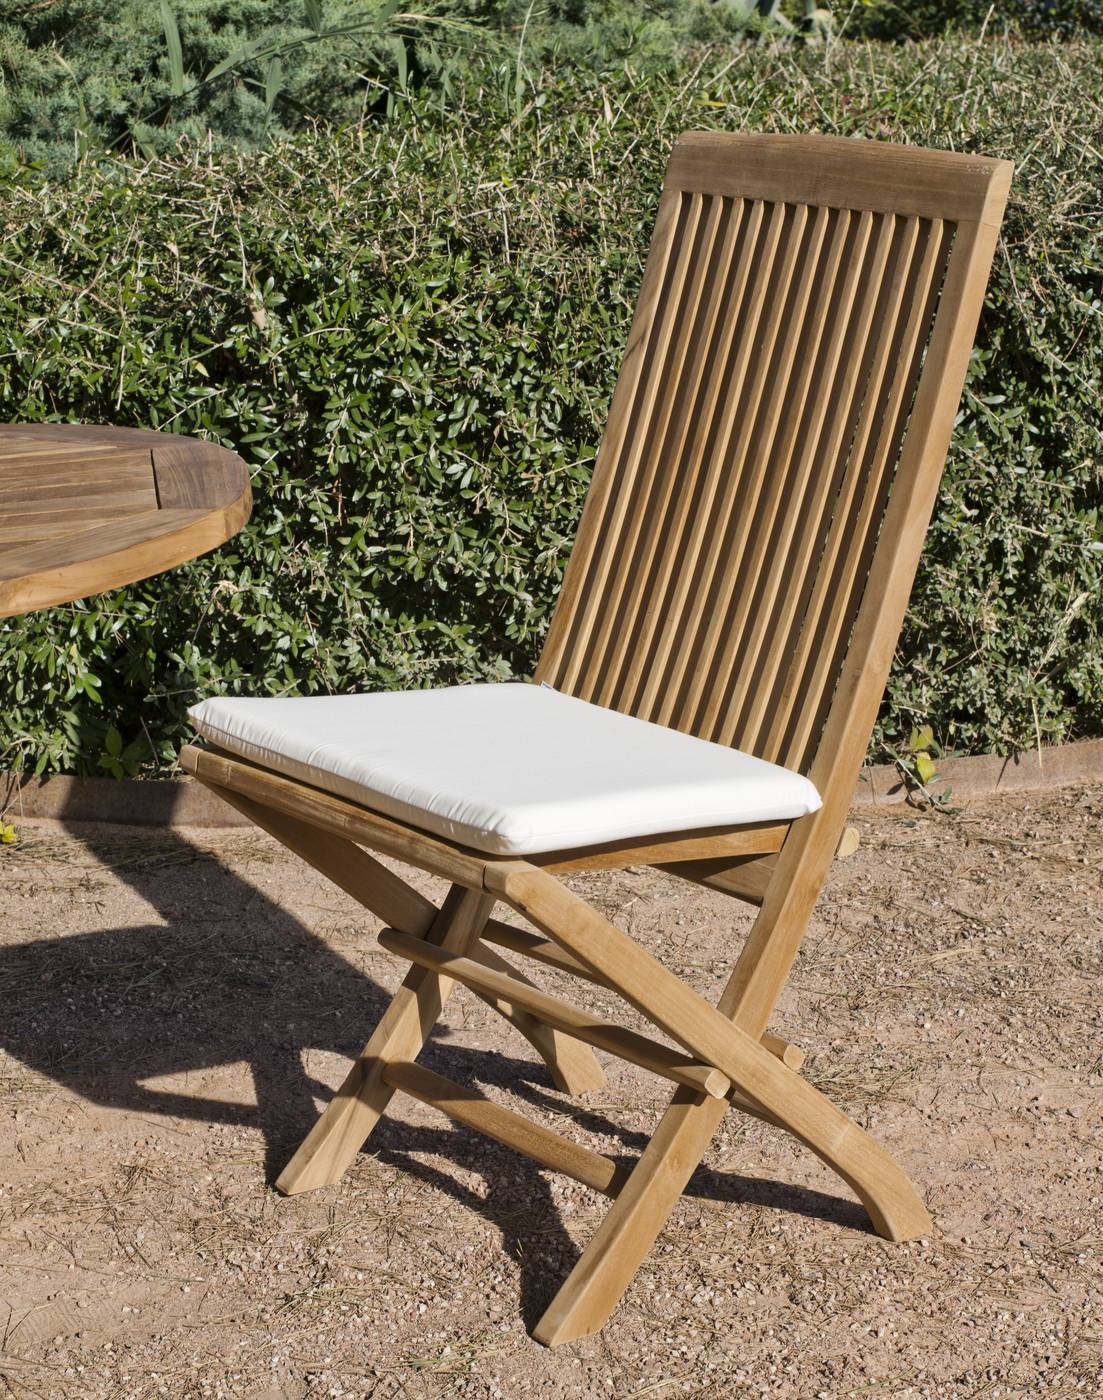 Set Madera Teka Seroni-140/4 - Conjunto de madera de teka: Mesa plegable y 4 sillas con cojines asiento